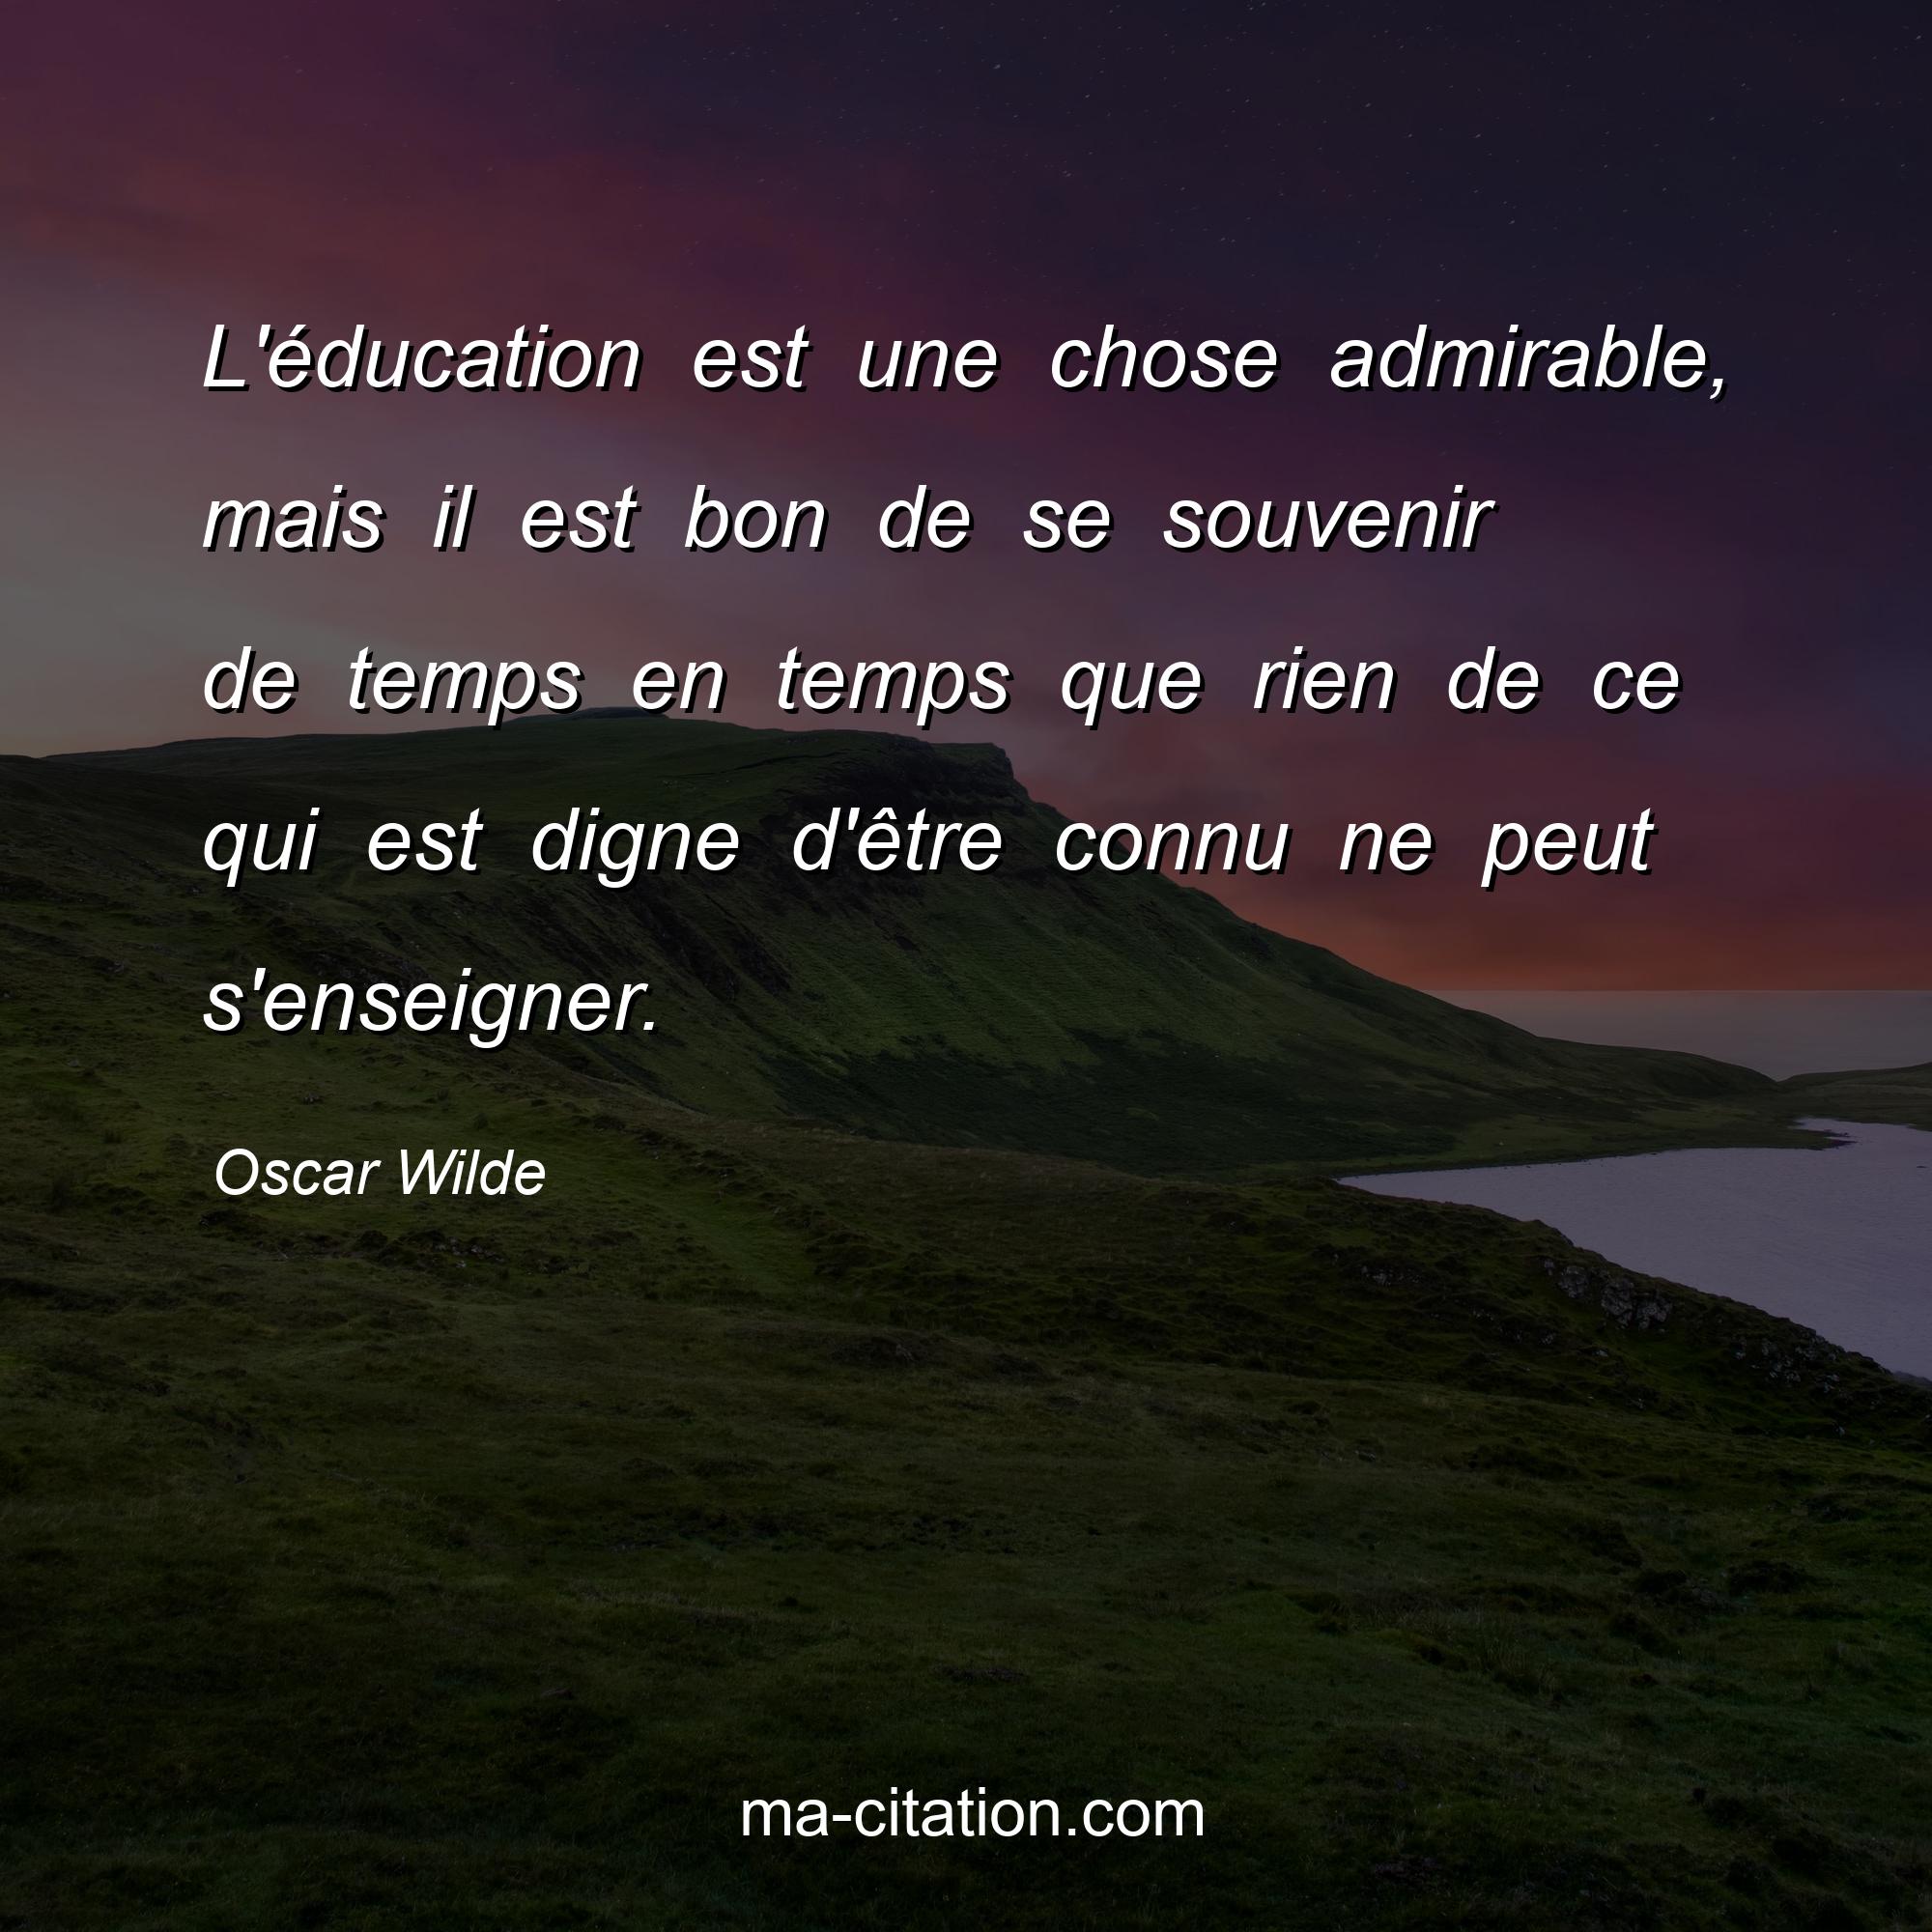 Oscar Wilde : L'éducation est une chose admirable, mais il est bon de se souvenir de temps en temps que rien de ce qui est digne d'être connu ne peut s'enseigner.